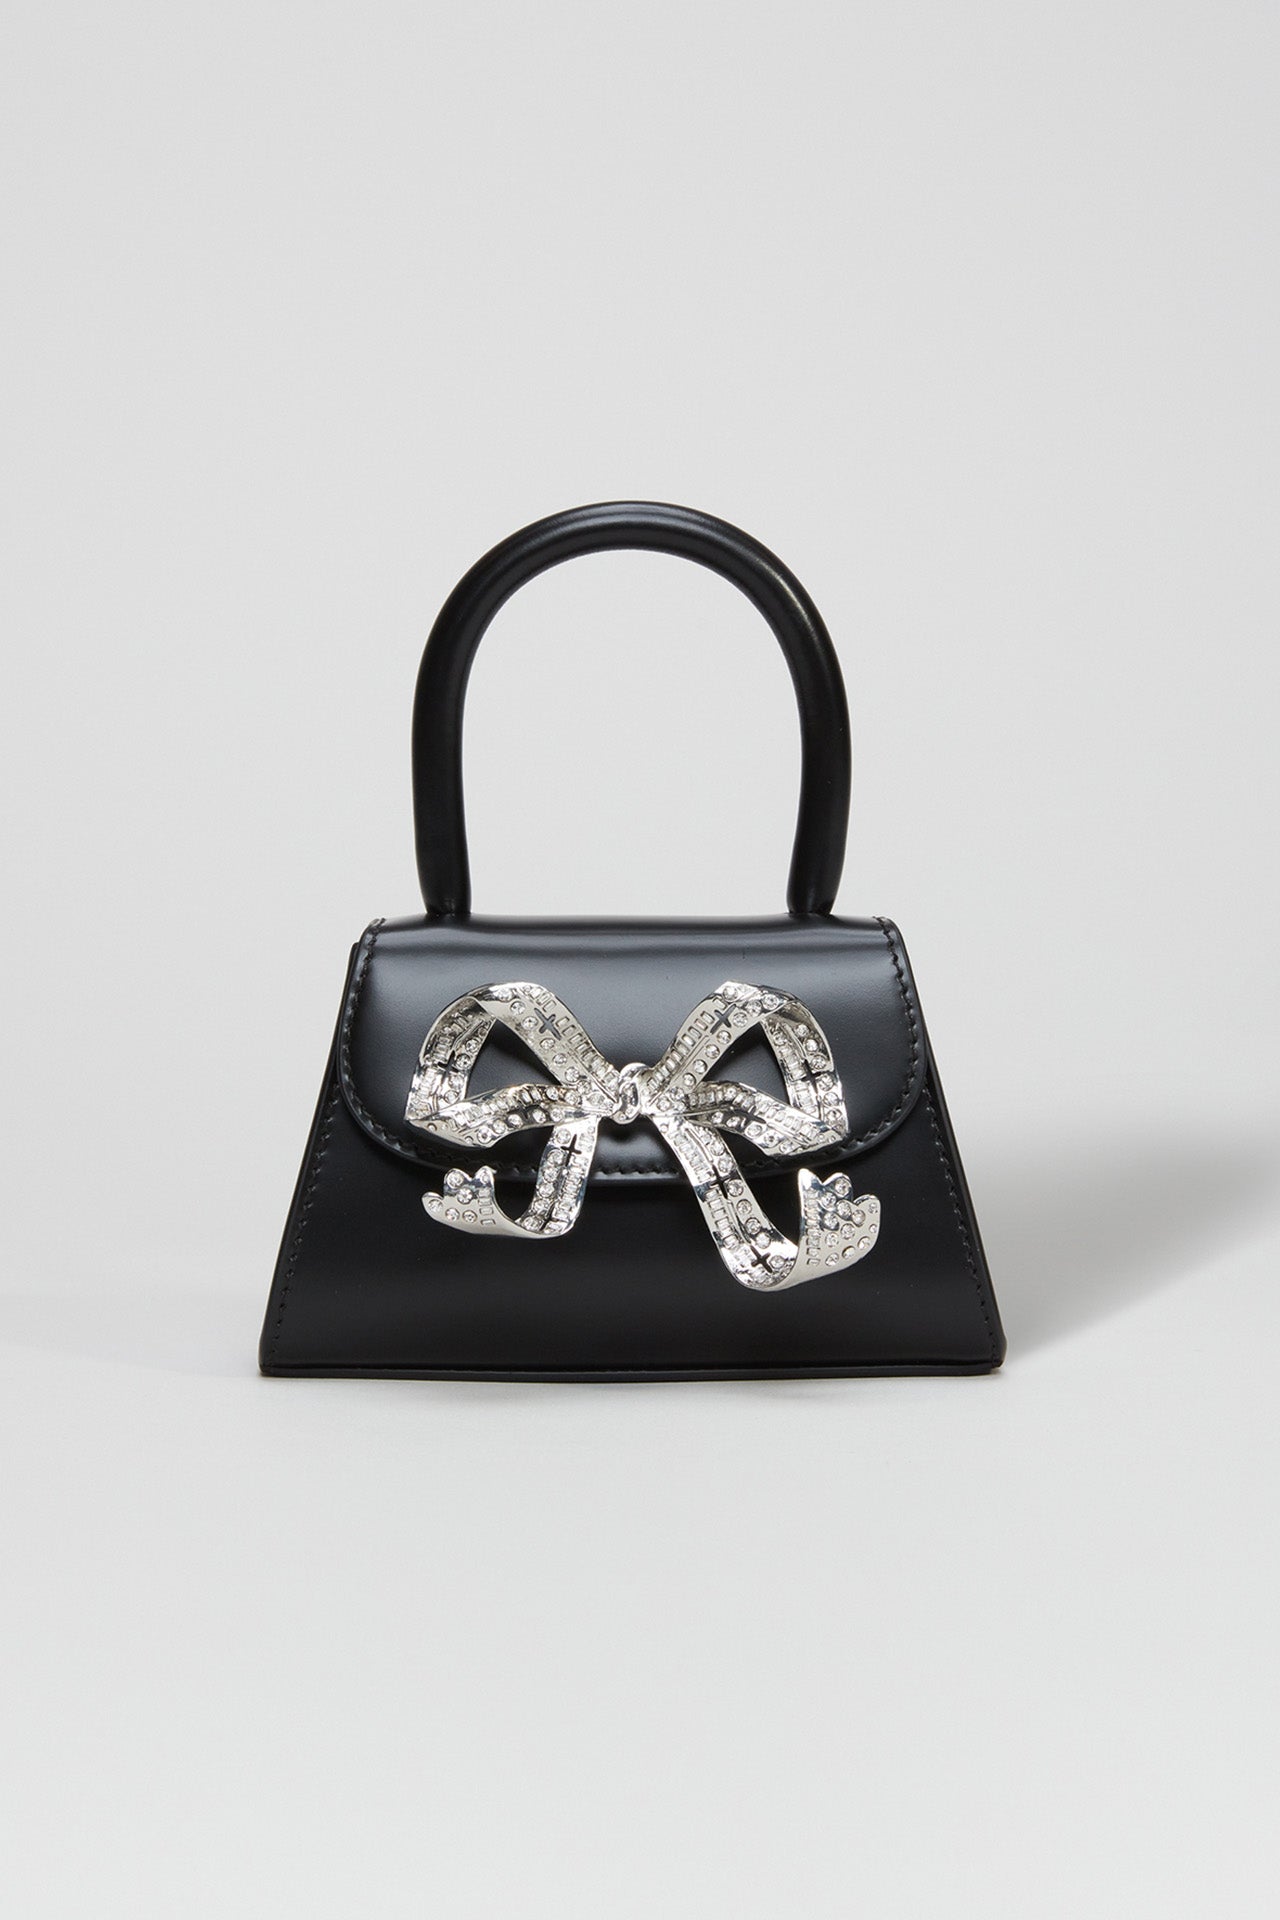 Black Capri SIlver Micro Handbag